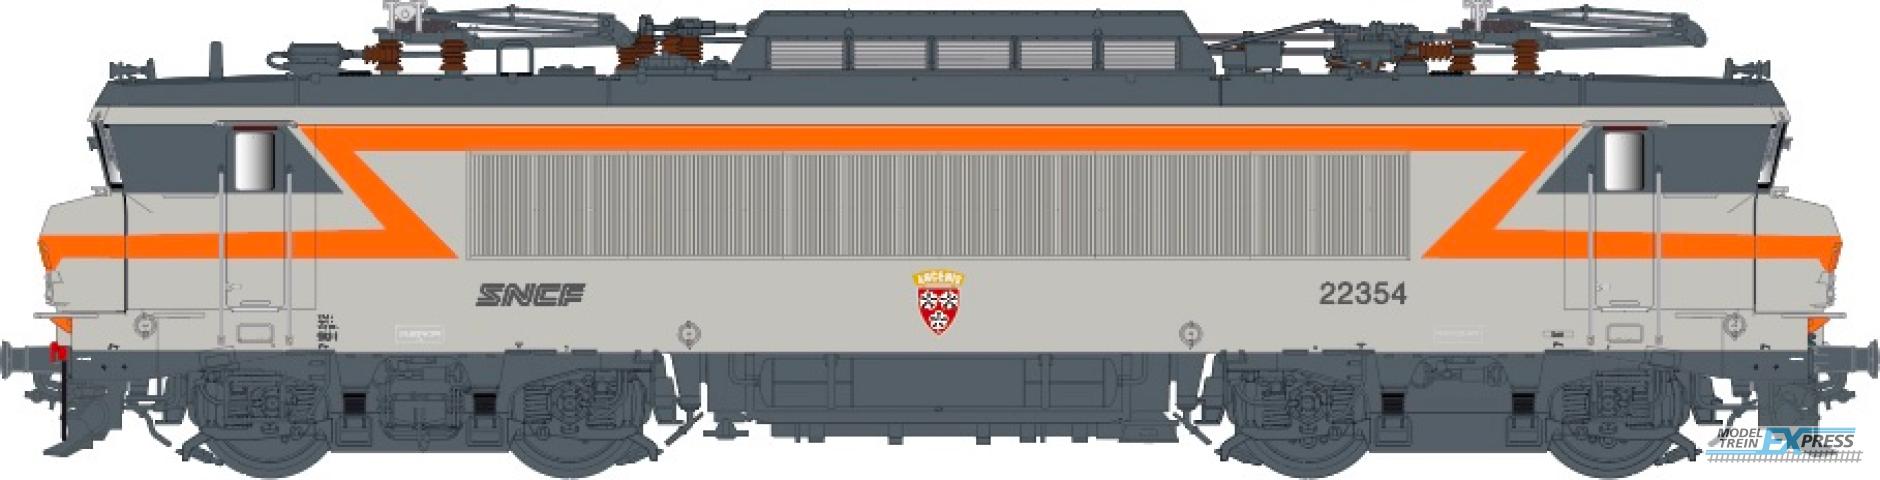 LS Models 11061S BB22354. betongrijs/oranje. Noedel-logo, wapen "Ancenis", depot Rennes / Ep. V / SNCF / HO / DC SOUND / 1 P.